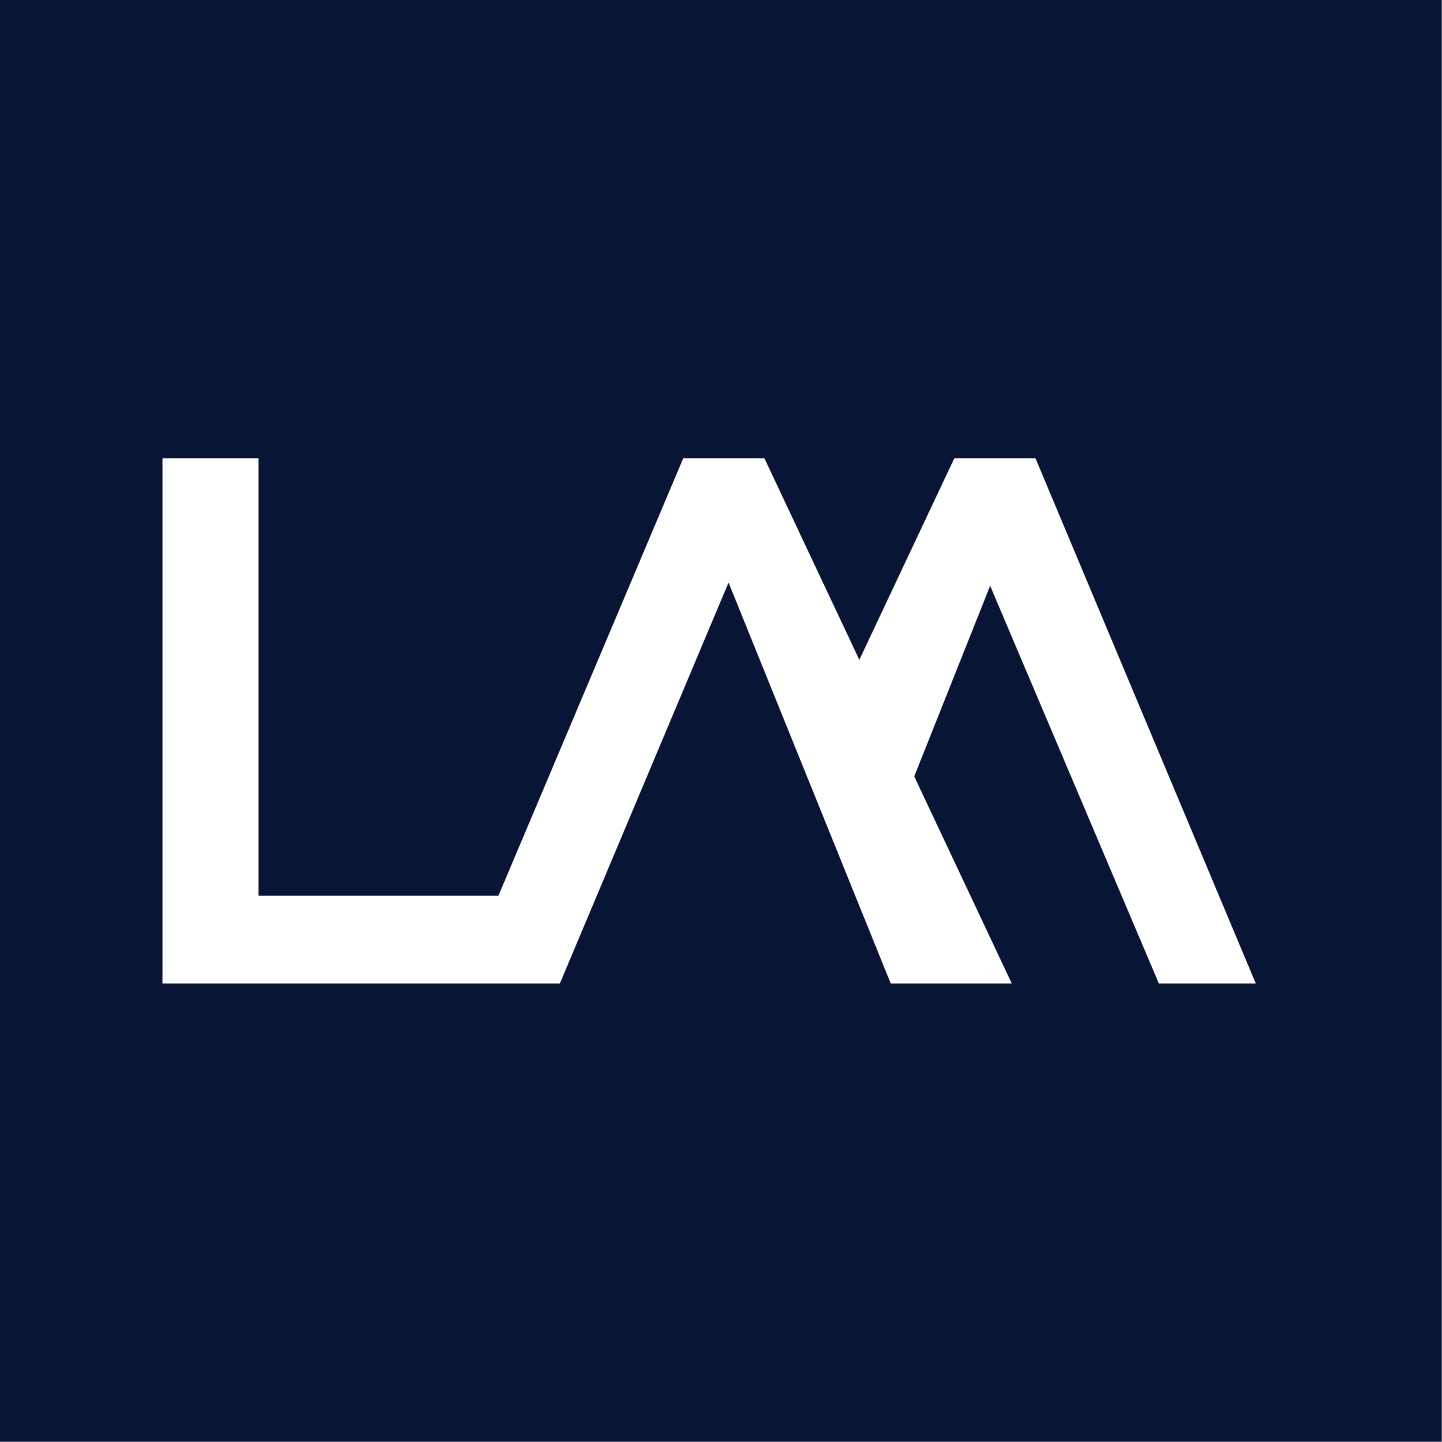 Life Mib Logo